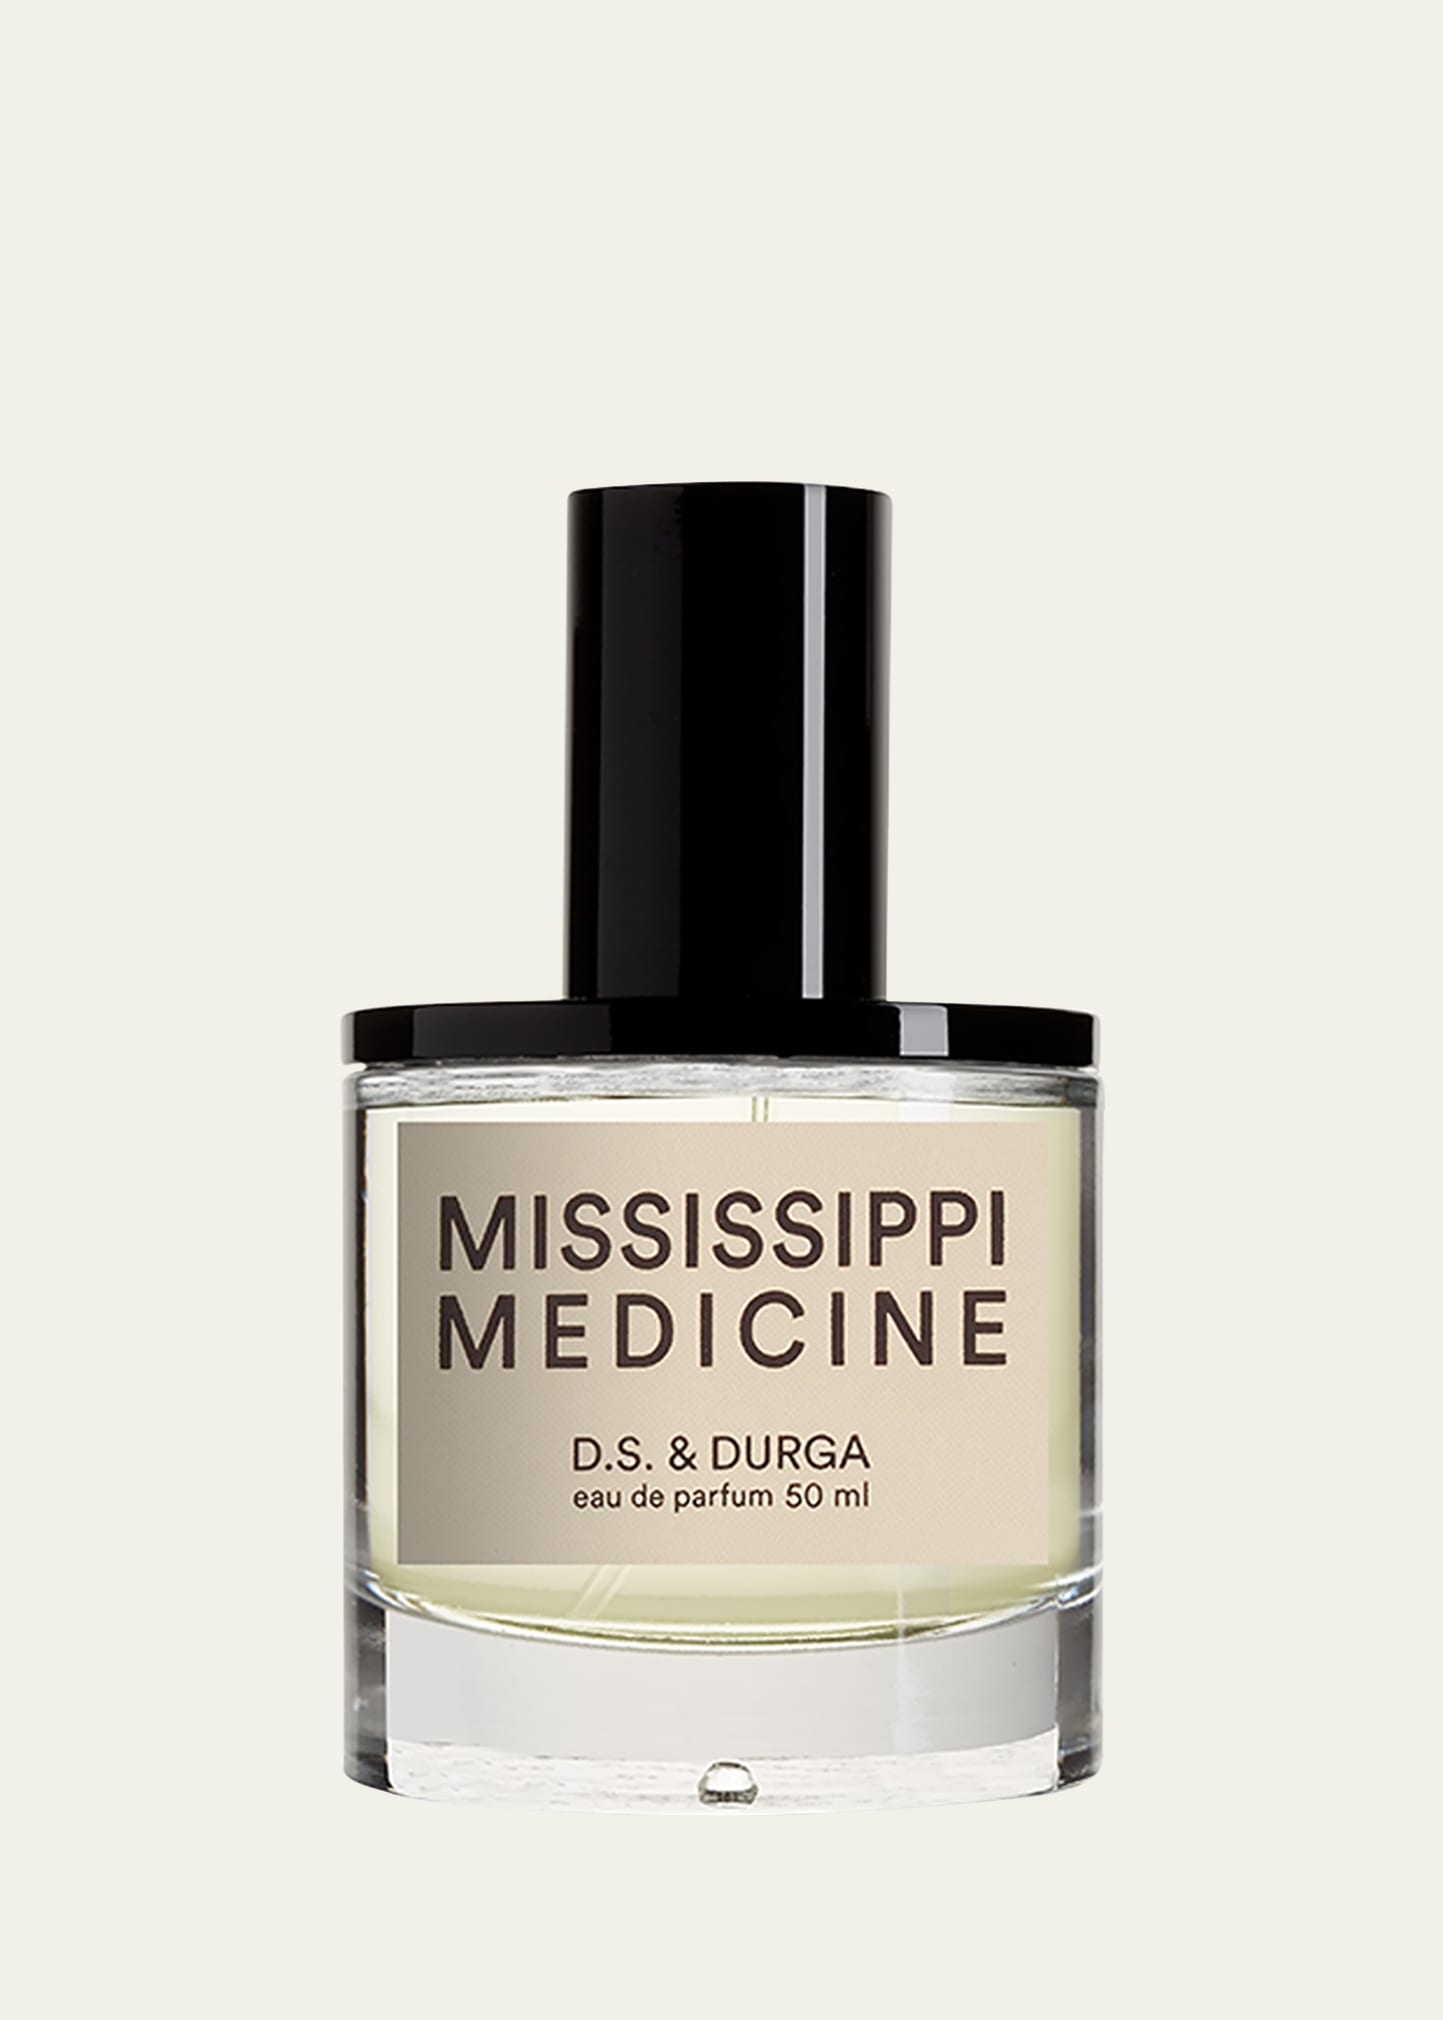 D.S. & DURGA Mississippi Medicine Eau de Parfum, 1.7 oz.